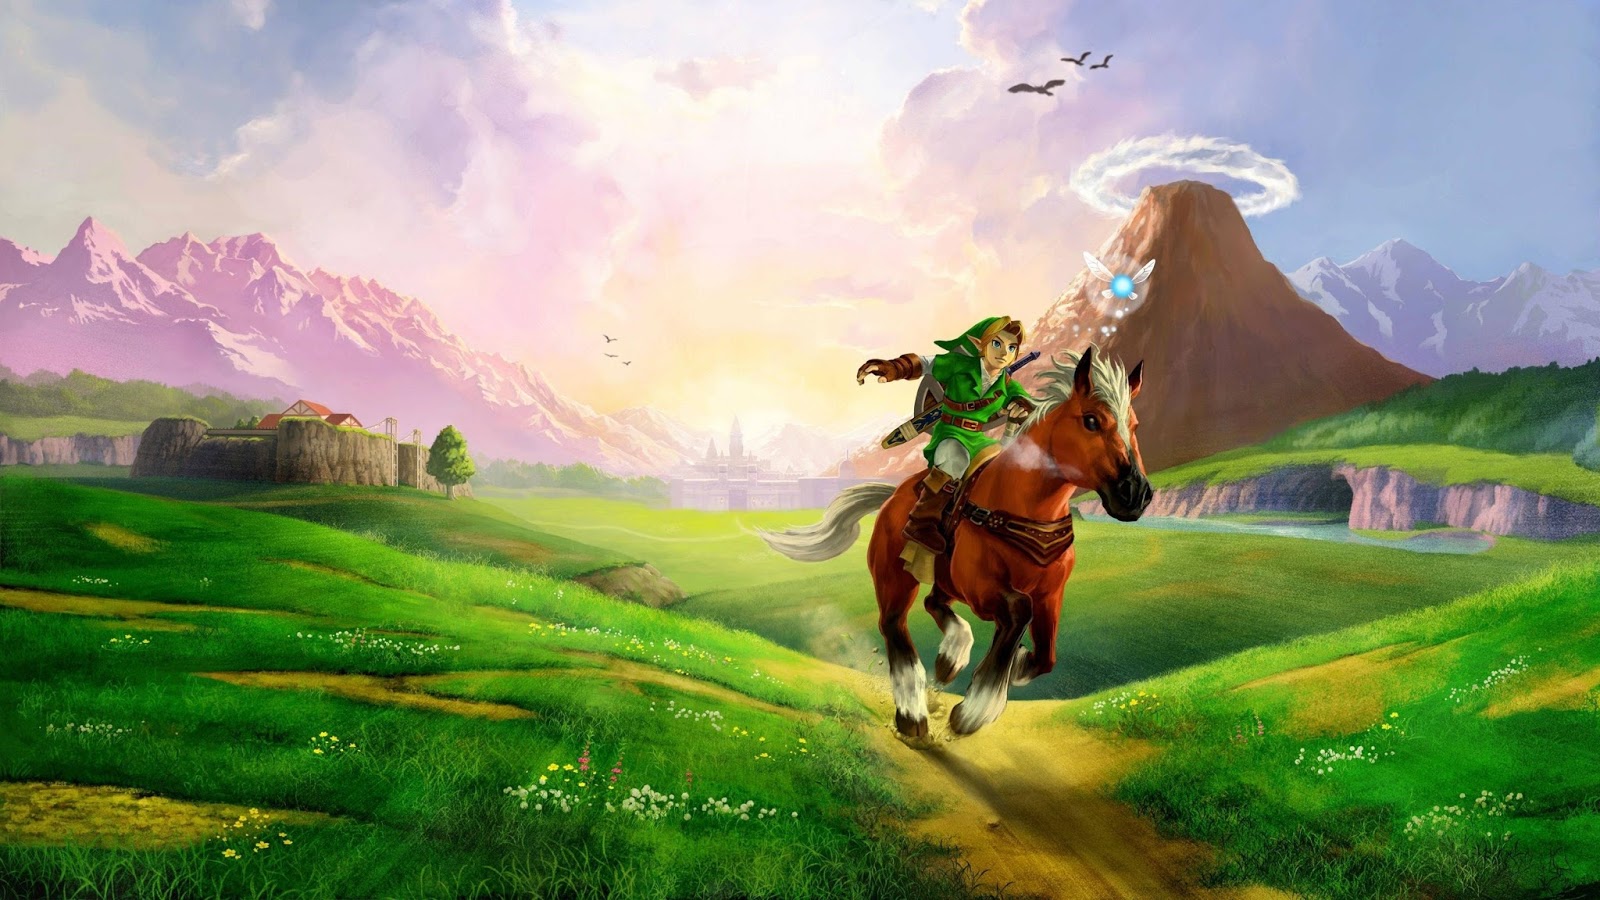 50+ Legend Of Zelda Wallpapers 4k HD (2020) - We 7